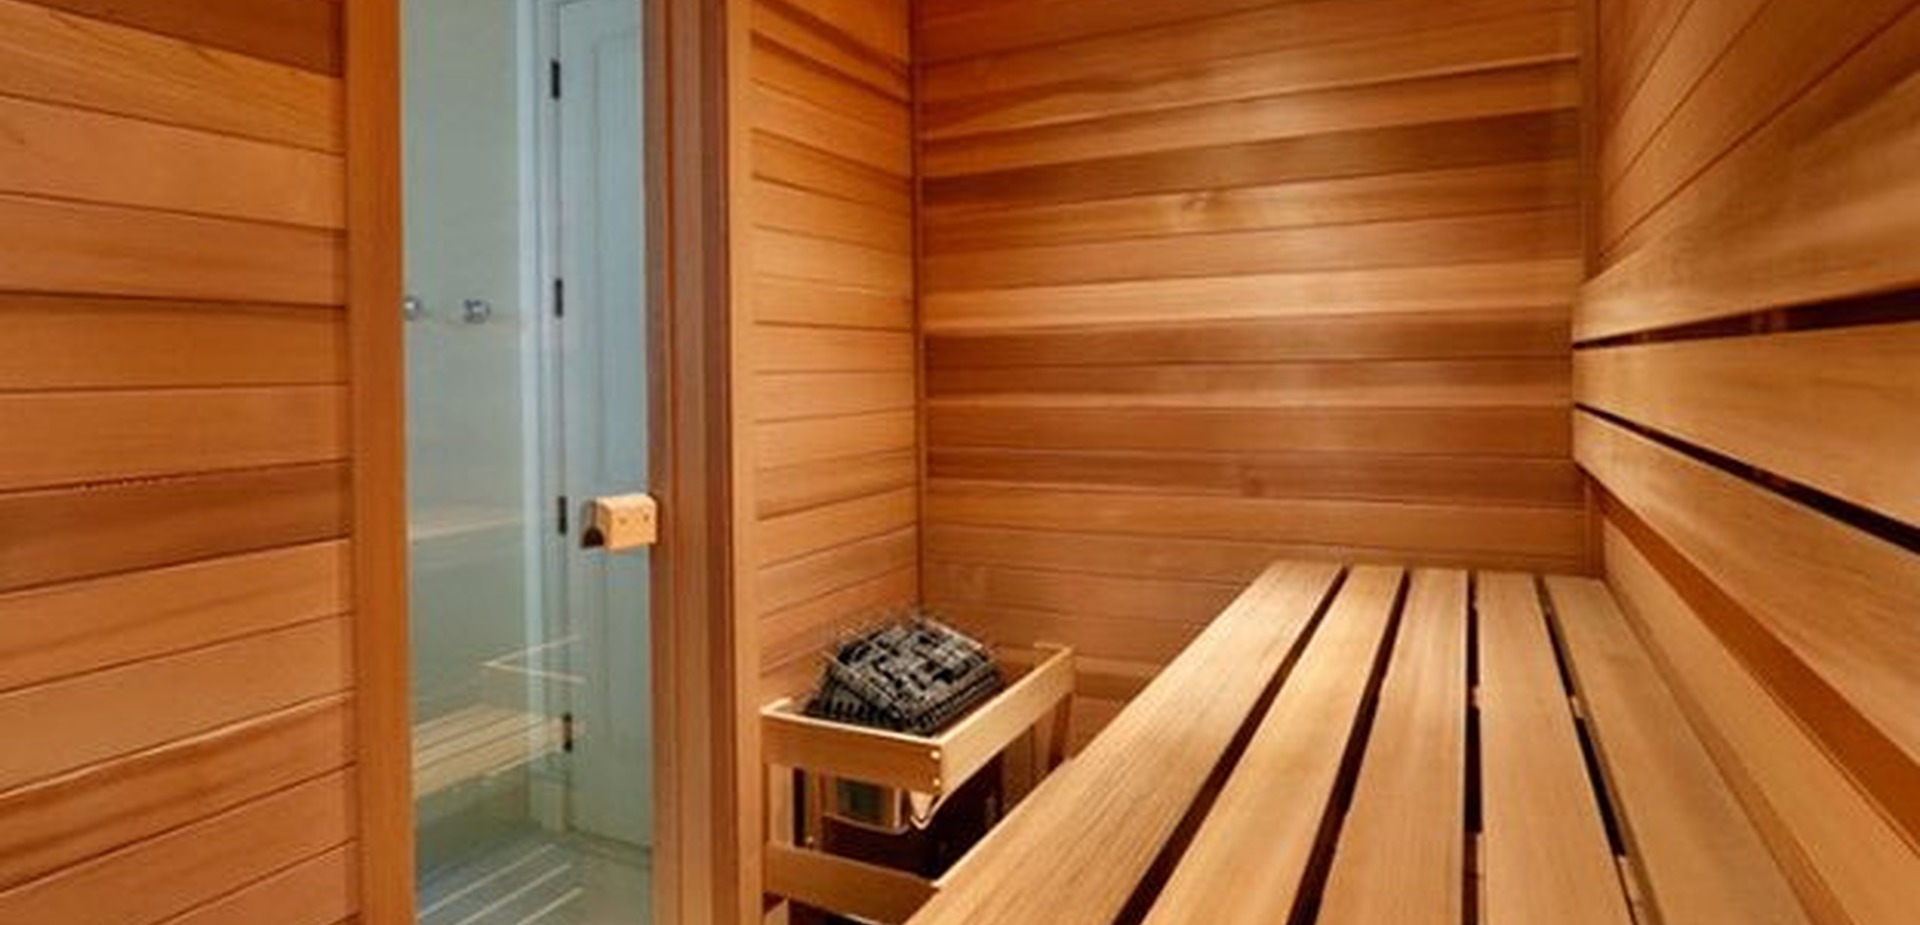 Interno sauna.jpg